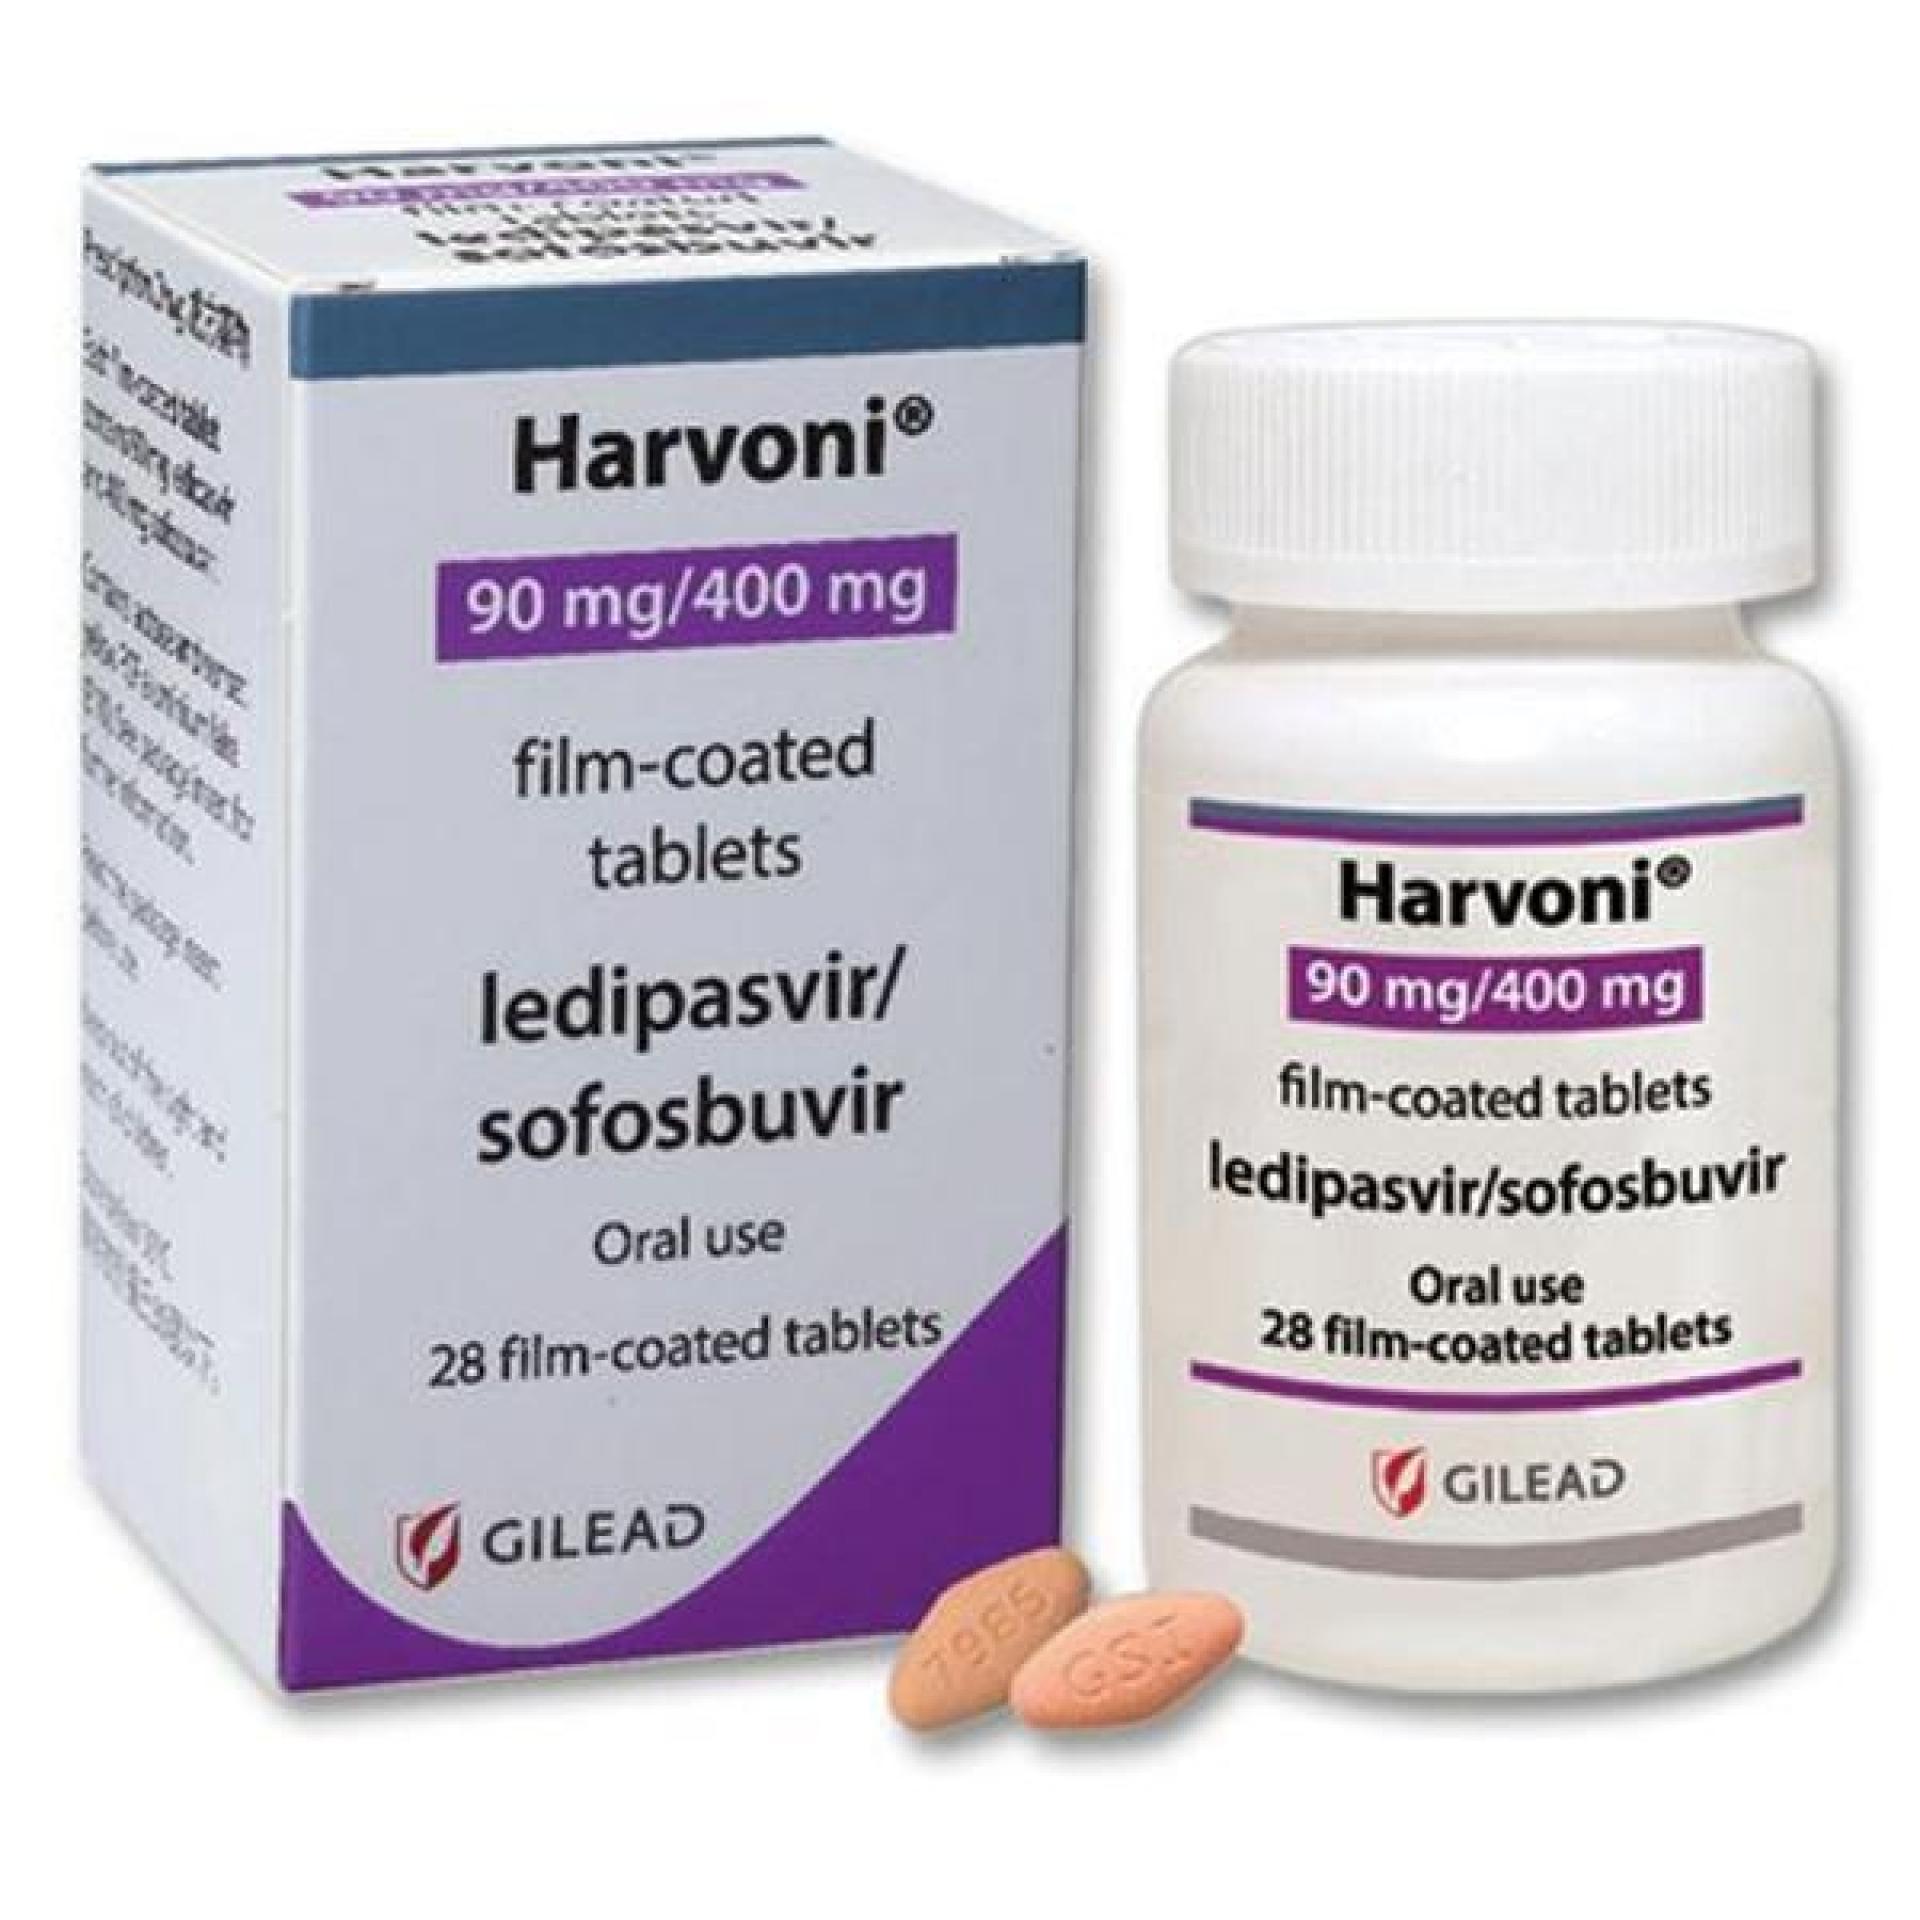 Medicamento falsificado para hepatite C circula no Brasil, alerta a Anvisa